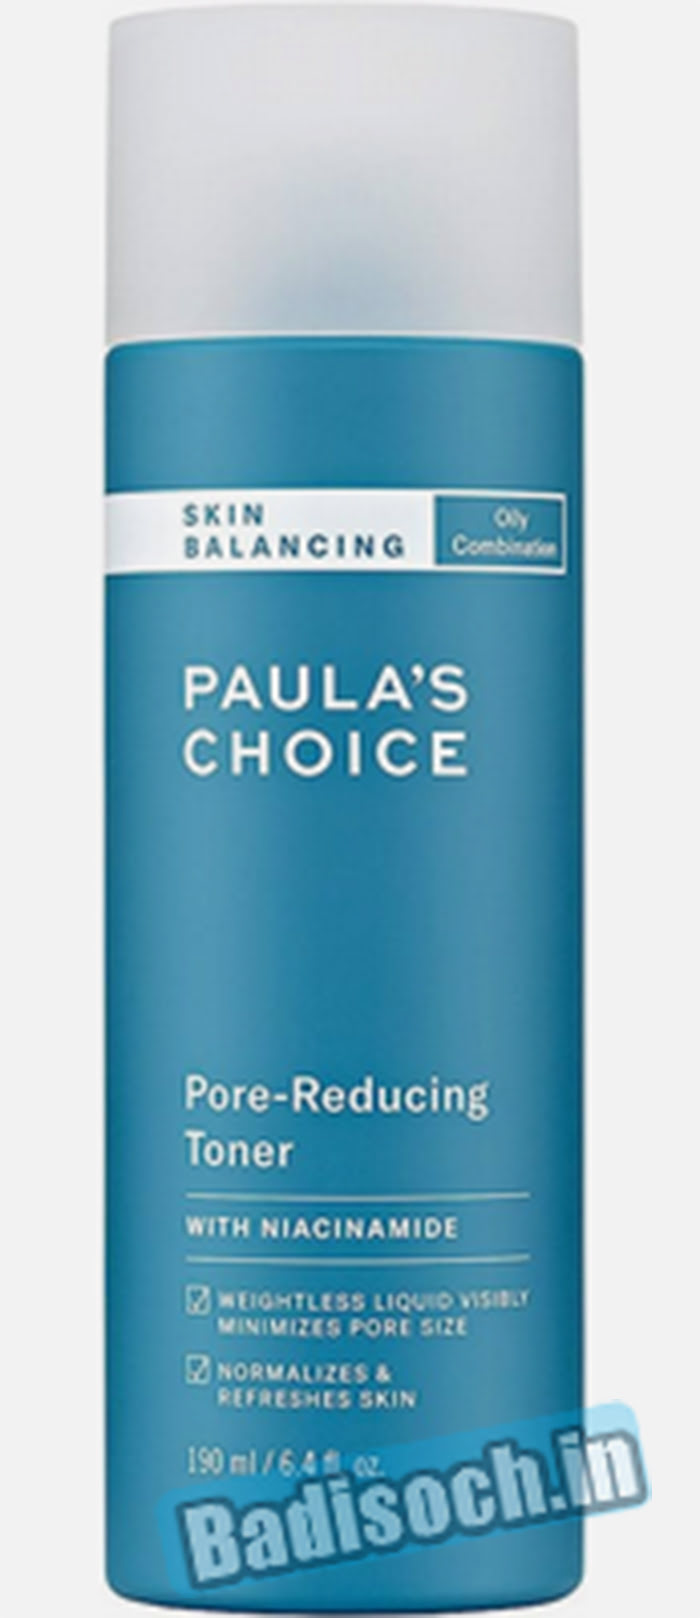 Paula's Choice Balancing Pore-Reducing Toner